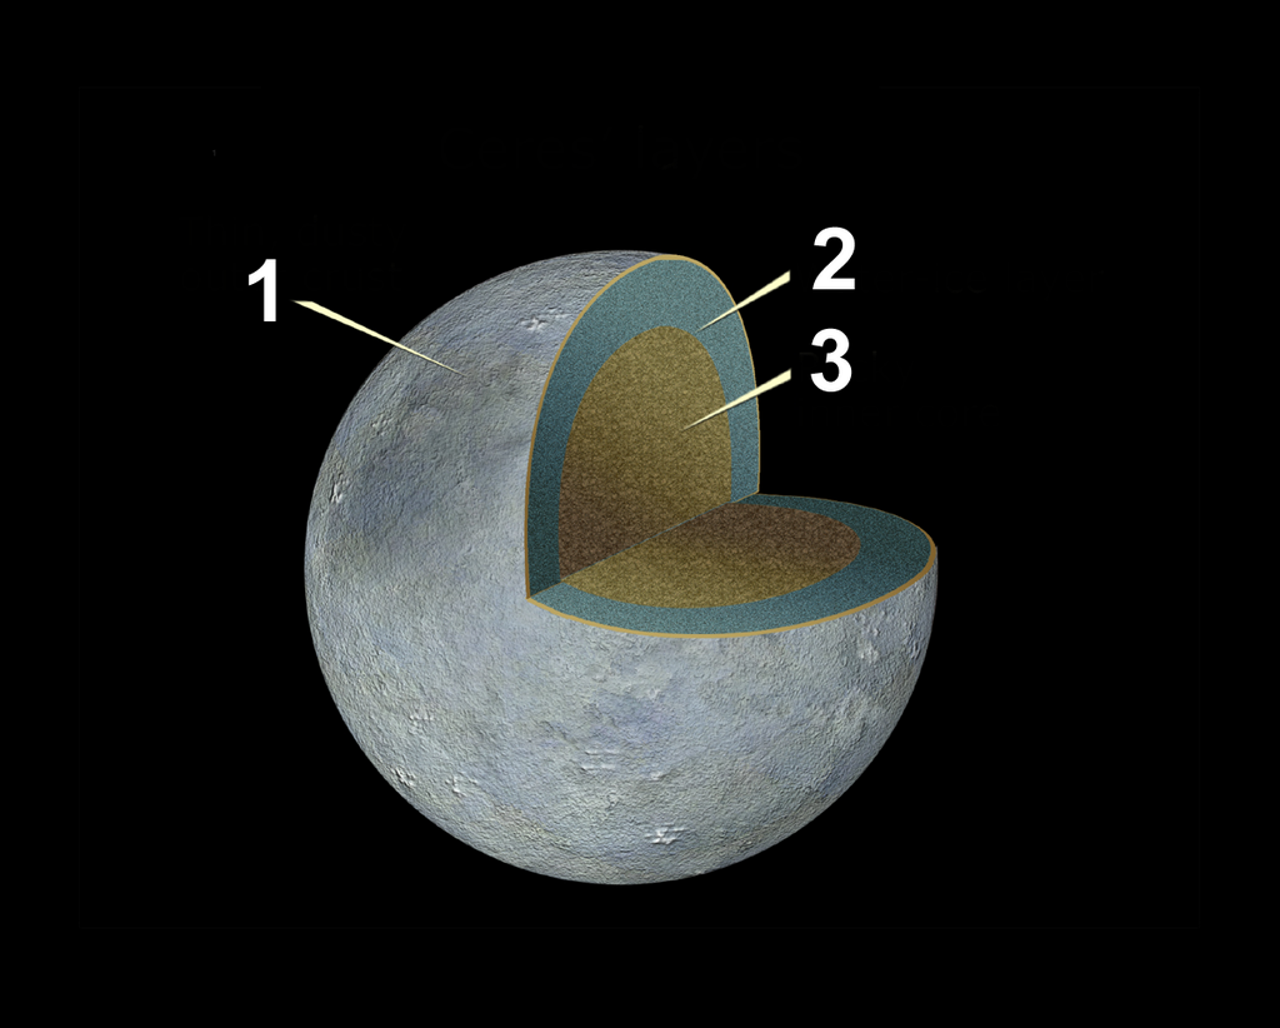 Внутрішня структура Церери, де 1 — тонкий шар реголіту, близько 40 кілометрів, 2 — це крижана мантія товщиною у сто кілометрів, а 3 — силікатне ядро. NASA, ESA, and A. Feild / Wikimedia Commons